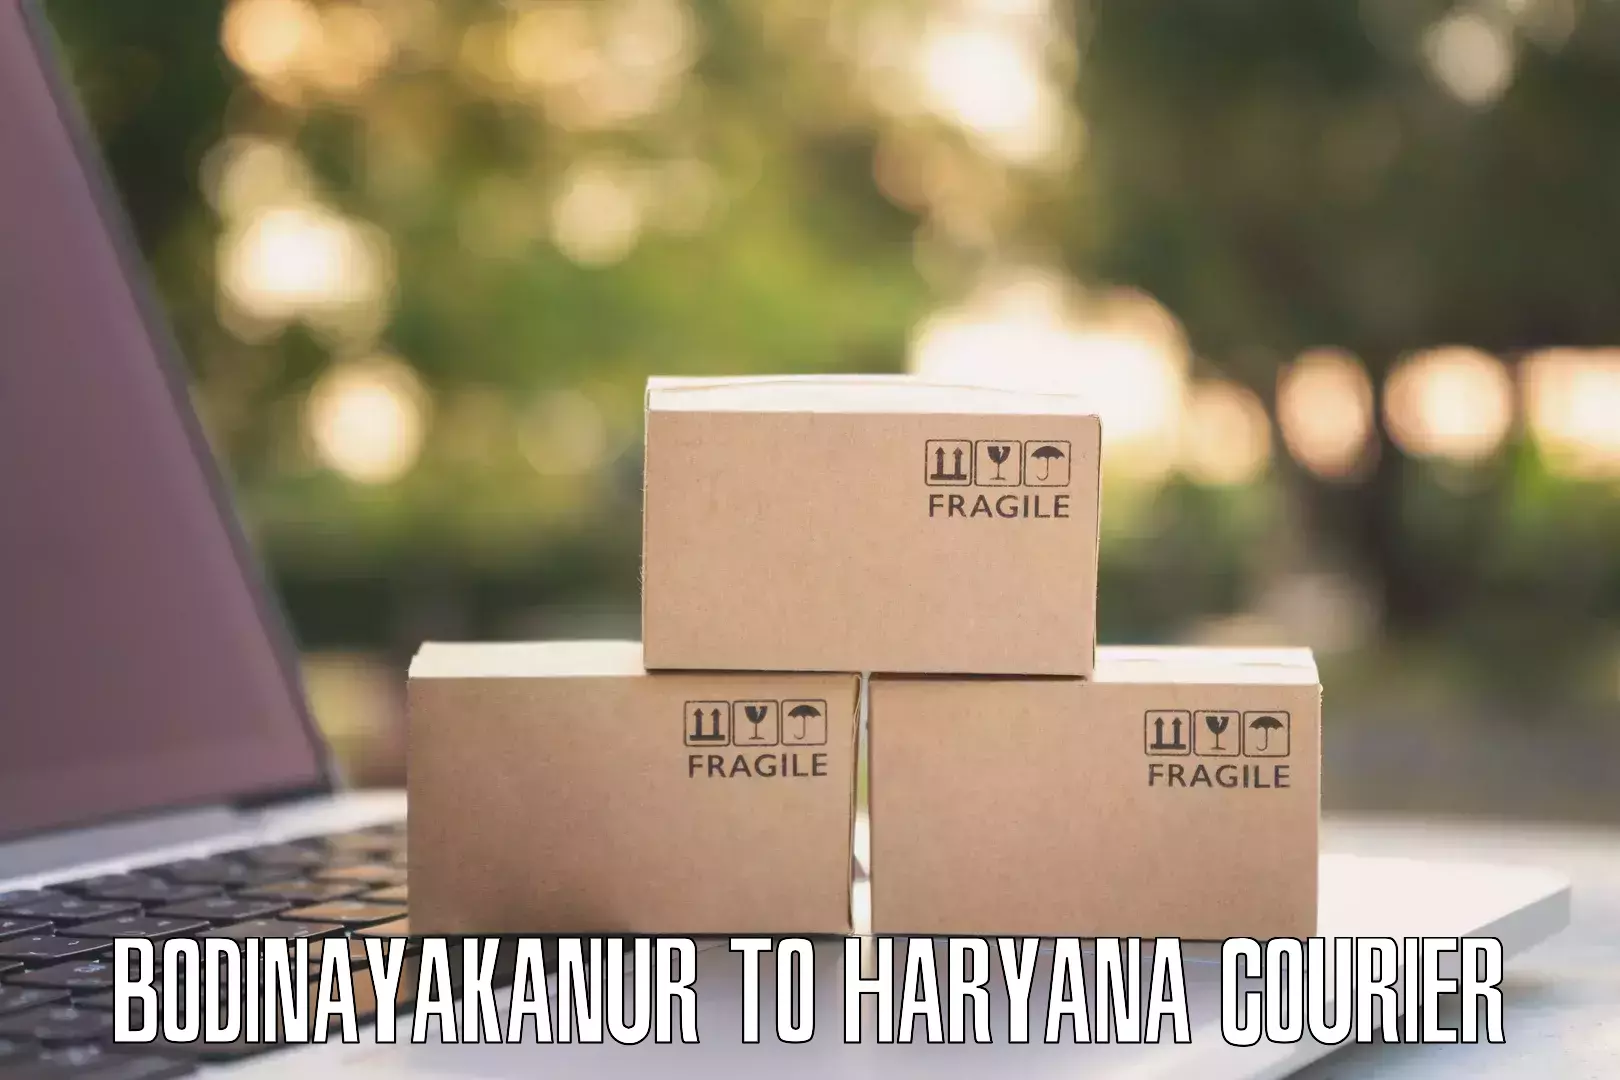 E-commerce logistics support Bodinayakanur to Mandi Dabwali